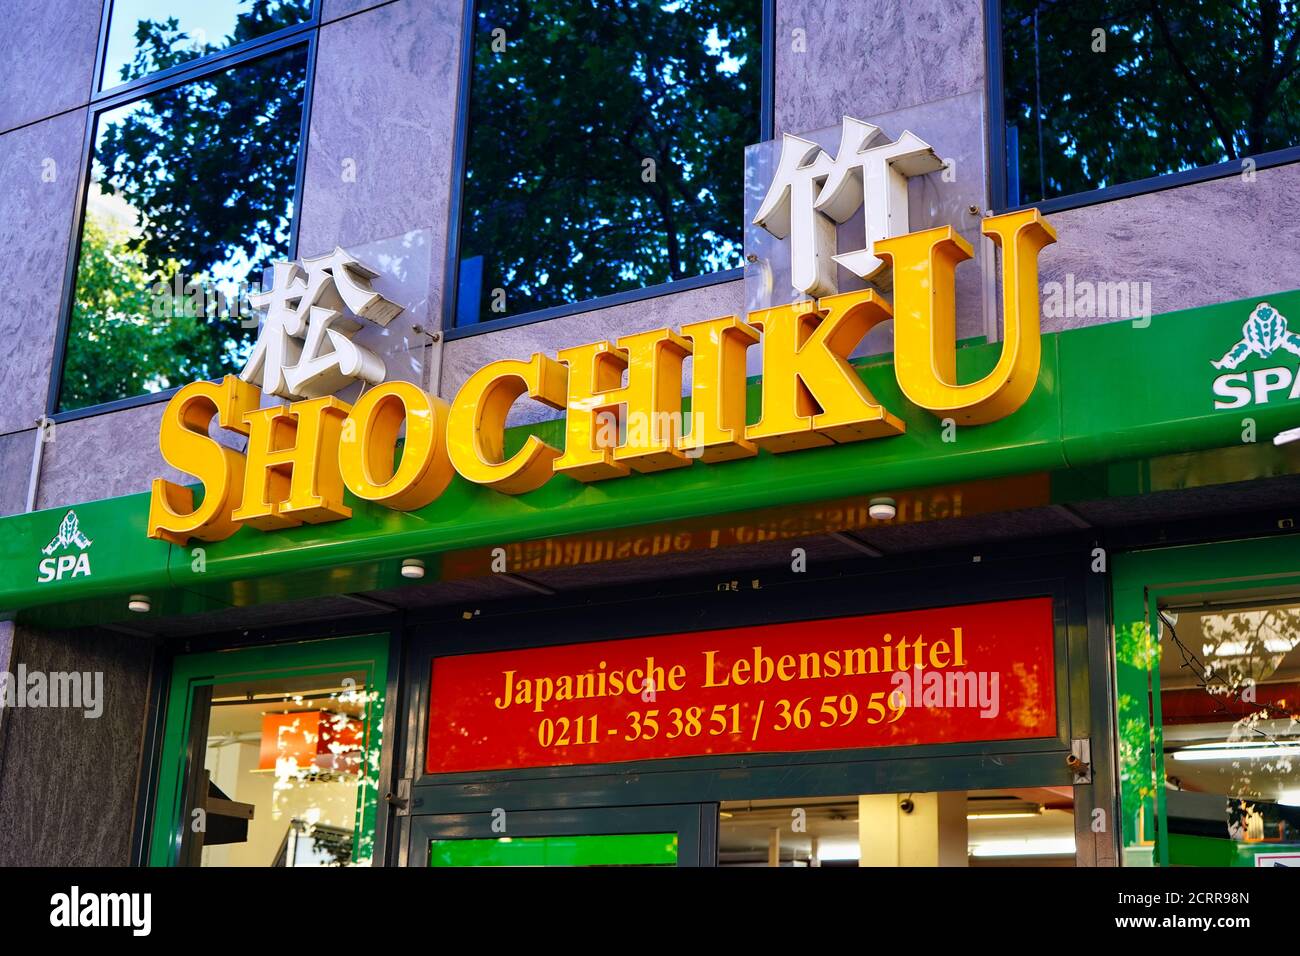 Außenansicht des Lebensmittelladens 'Schiku' im beliebten japanischen Viertel in der Immermannstraße in Düsseldorf. Stockfoto